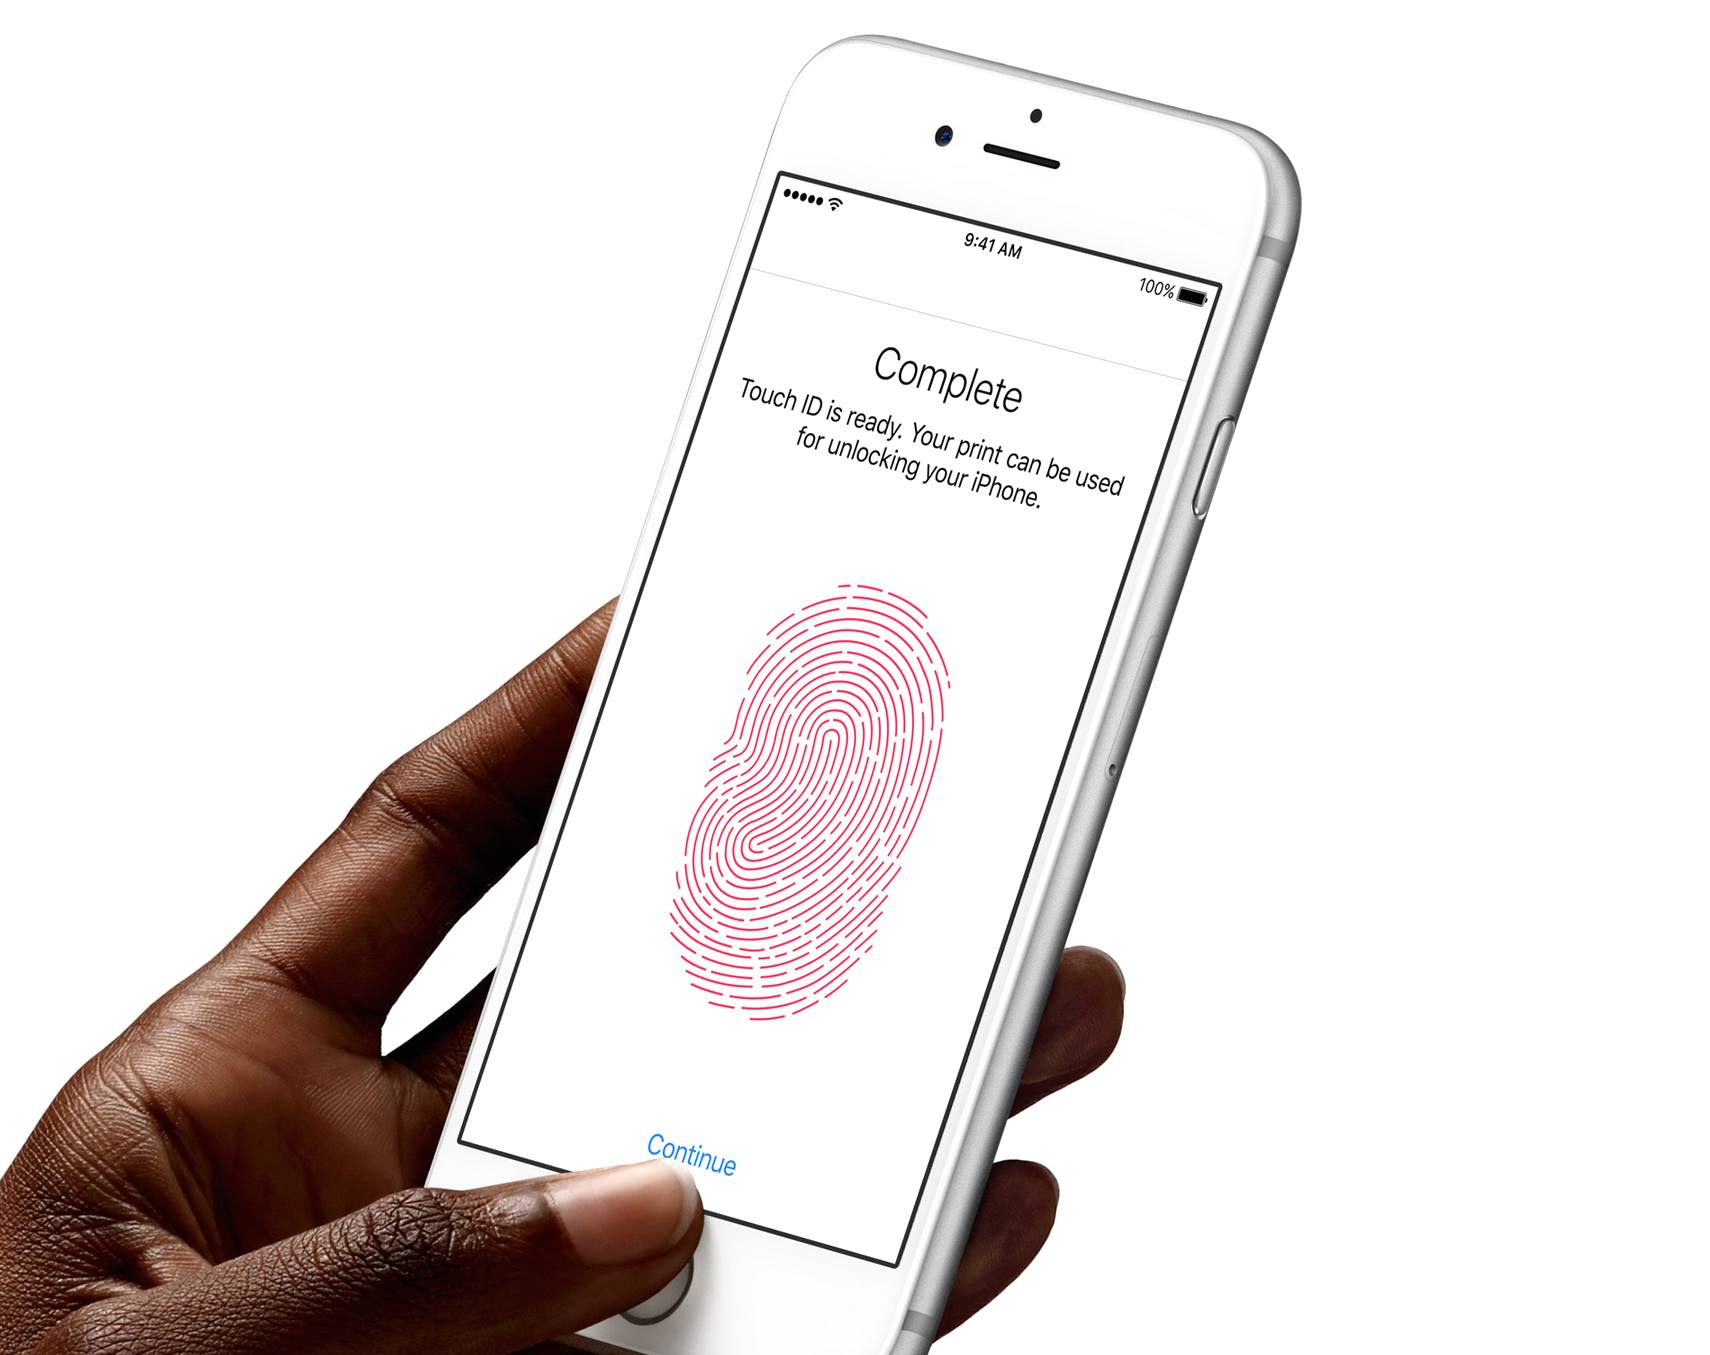 Display fingerprint Wallpapers Download | MobCup